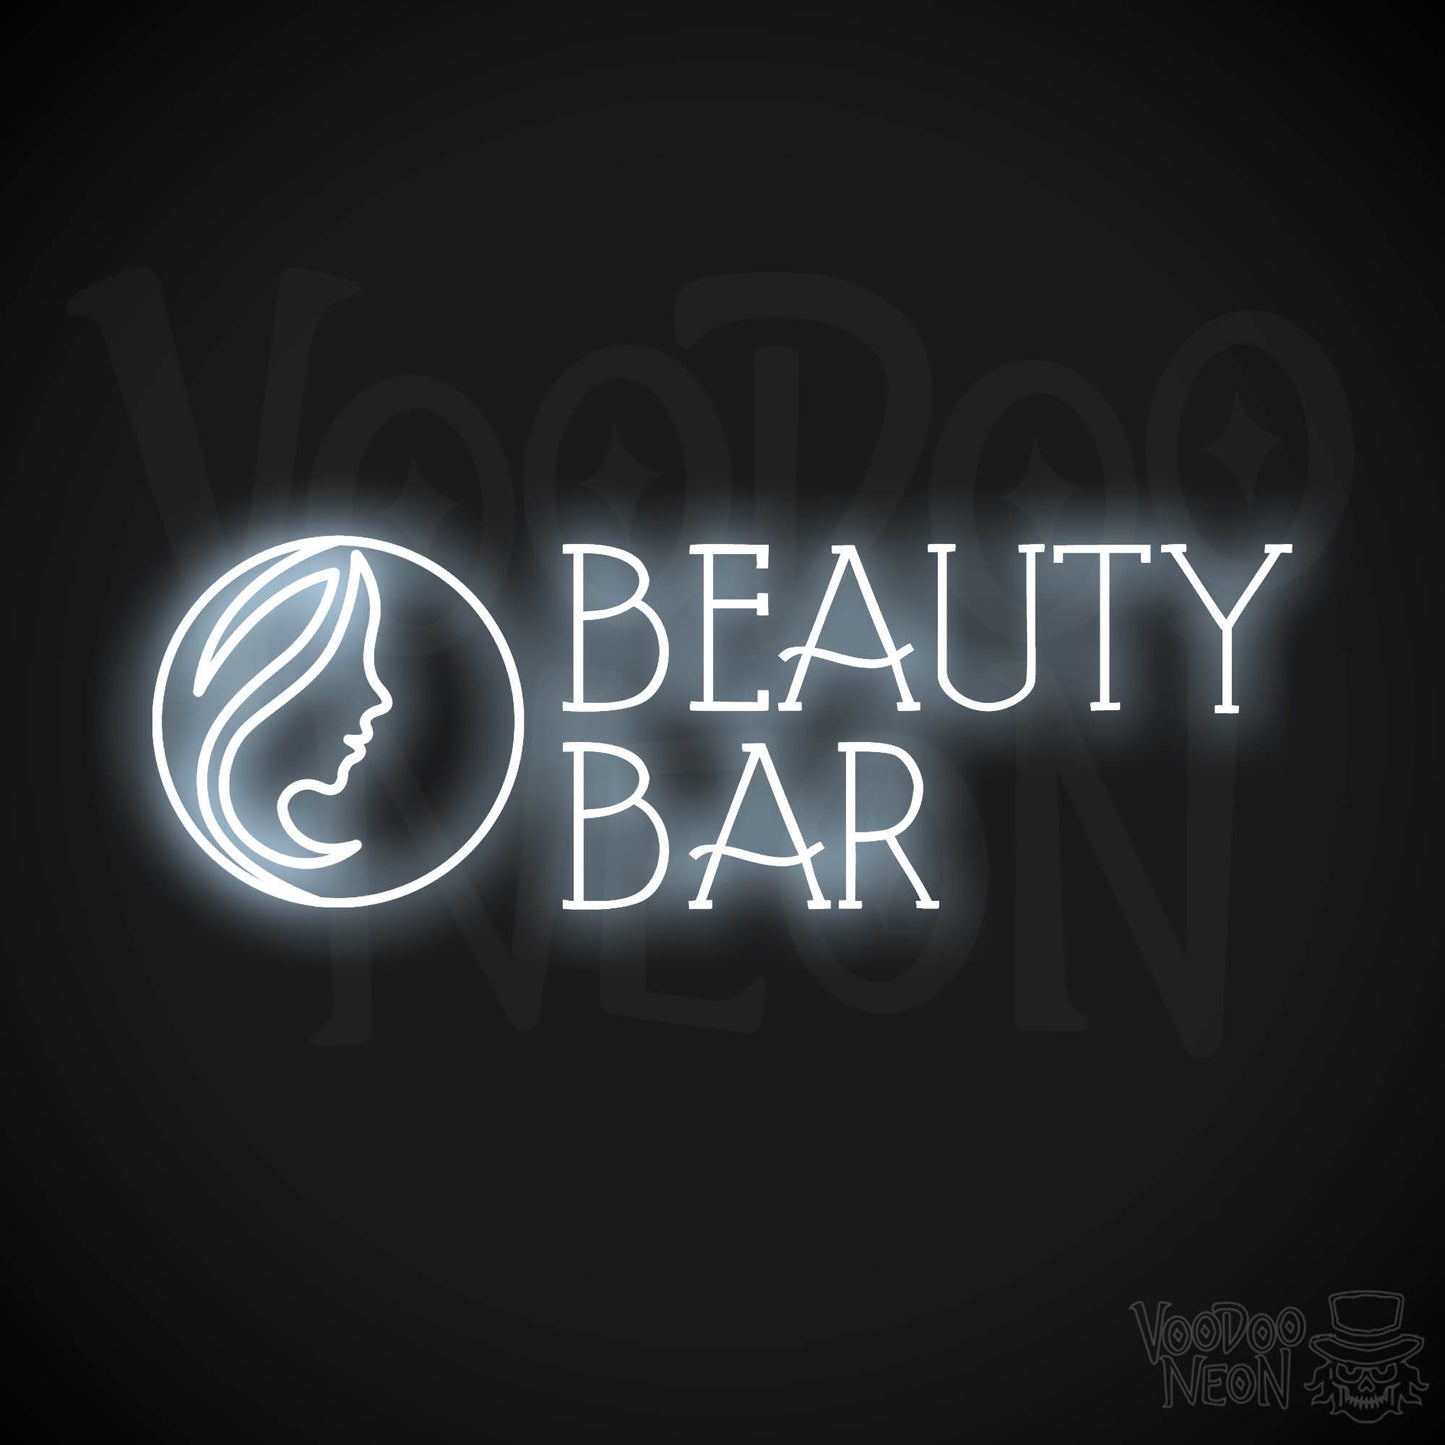 Beauty Bar LED Neon - Cool White